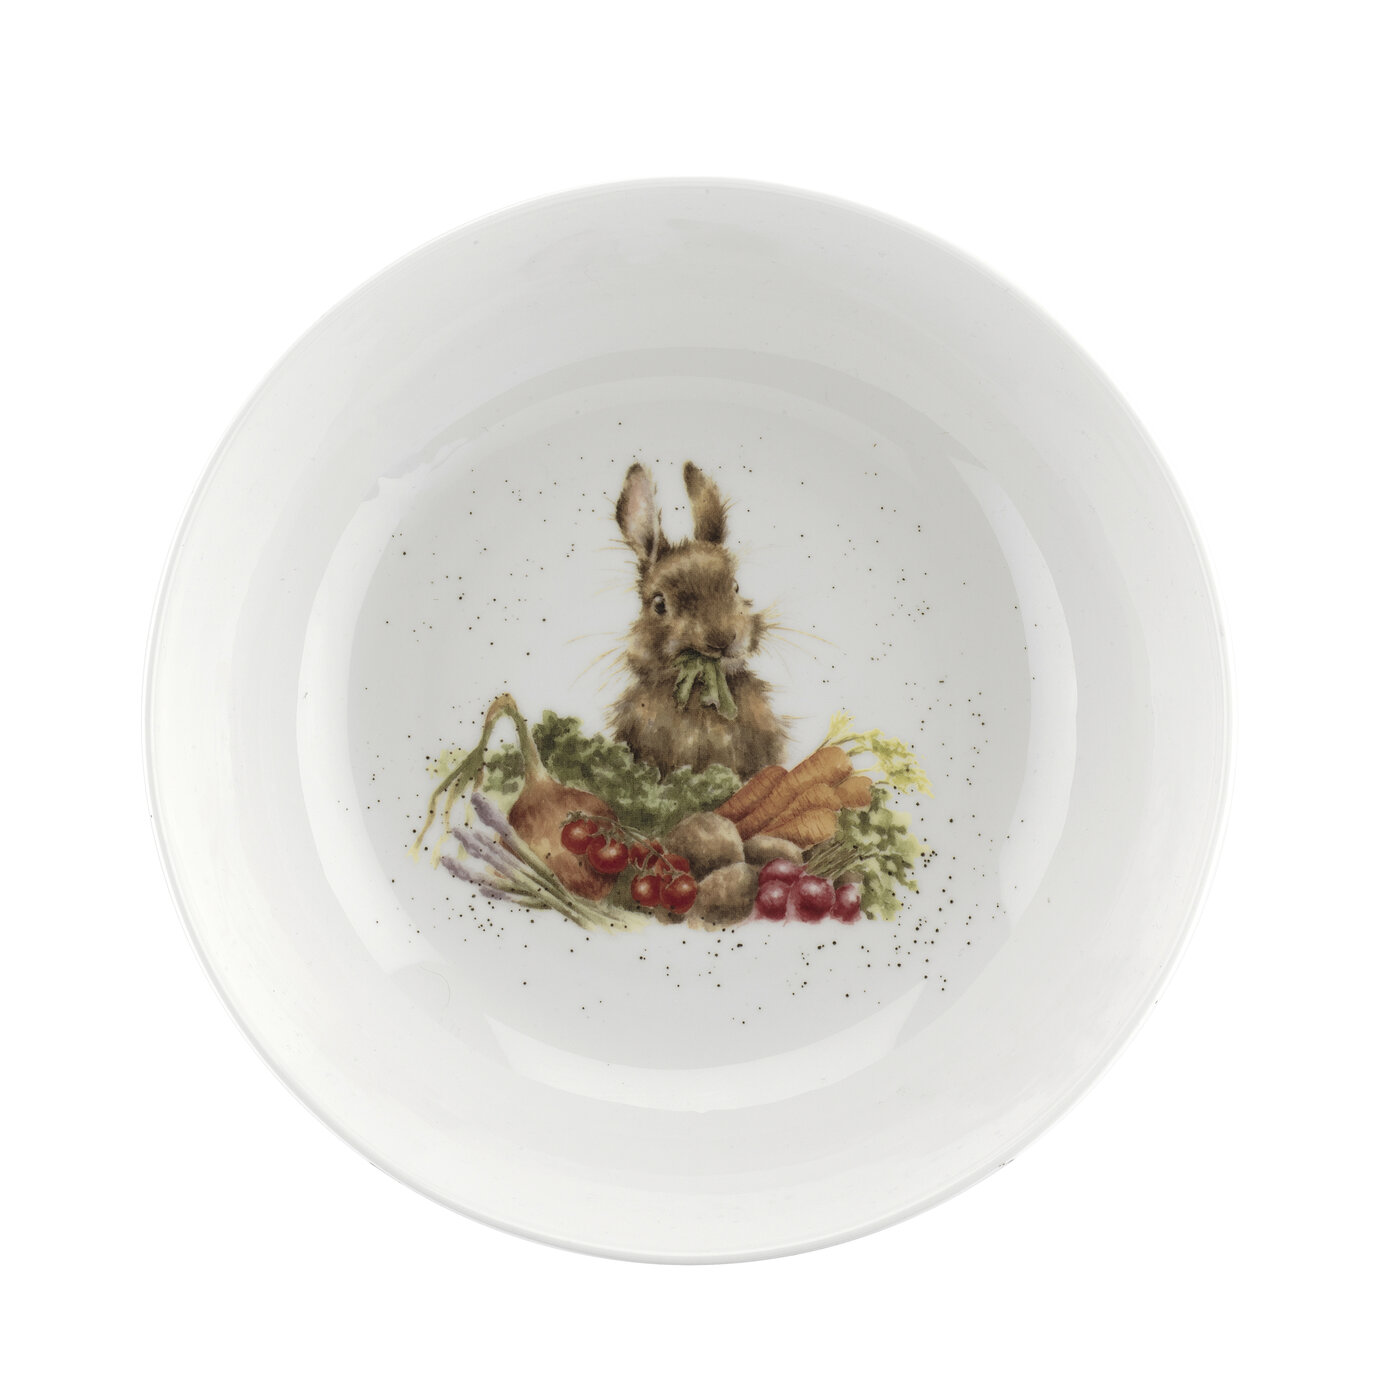 Wrendale Royal Worcester Rabbit Salad Bowl